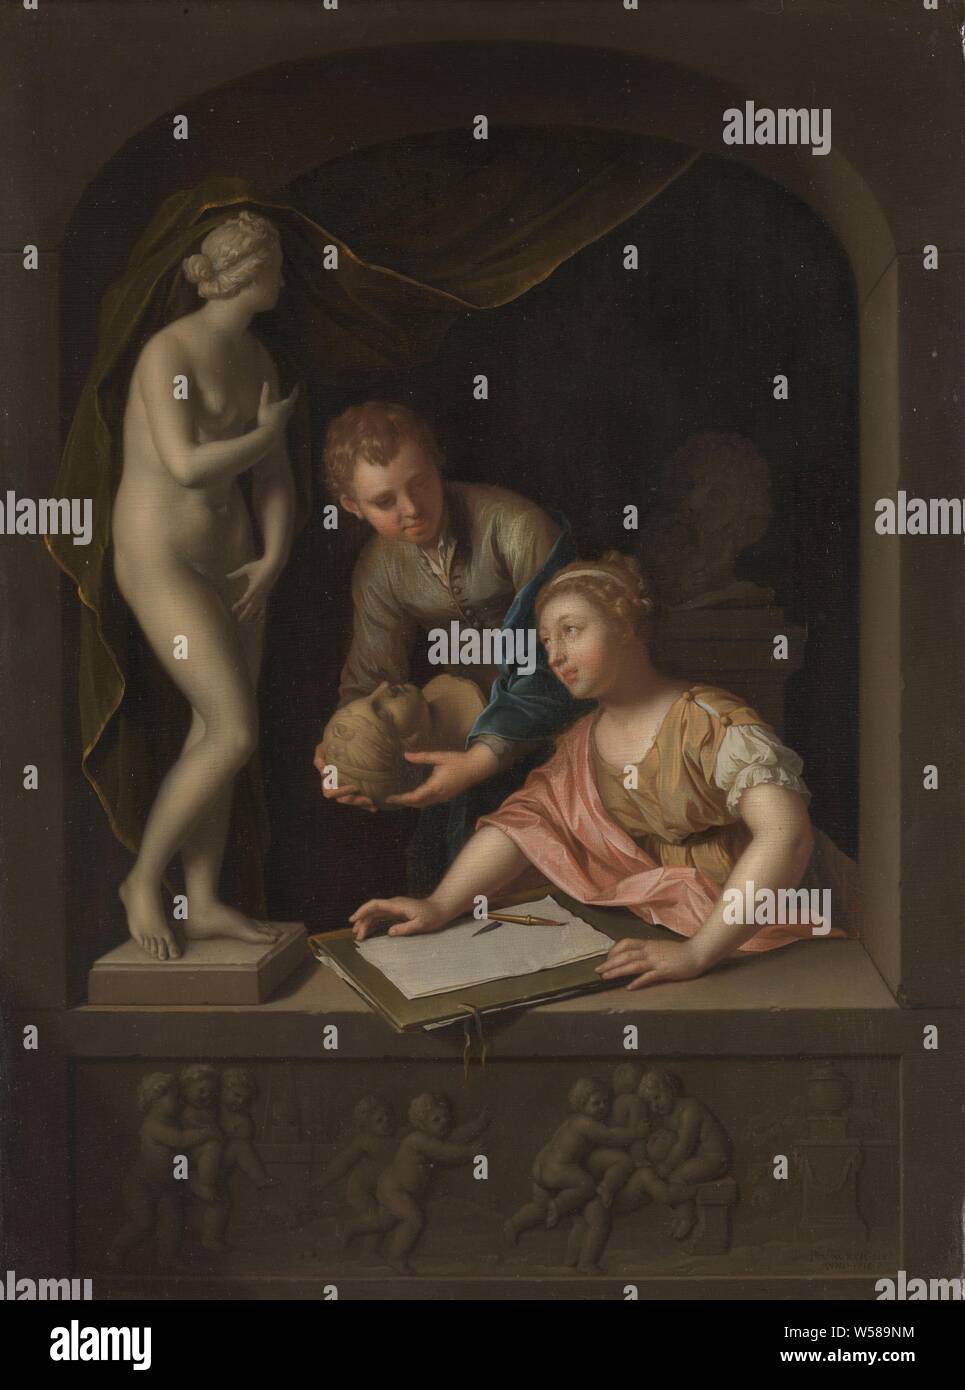 Dessin d'une fille et un garçon près d'une statue de Vénus une statue de Vénus, avec un dessin de fille et un garçon, dans une fenêtre en pierre, une jeune femme s'apprête à tirer sur une statue de Vénus. Derrière elle un garçon avec une tête de femme en plâtre dans ses mains. Dans la frise sous la fenêtre d'un clapet avec jeu de putti. reproduction d'une sculpture, Pieter van der Werff, 1715, panneau, de la peinture à l'huile (peinture), h 38,5 cm × w 29 cm Banque D'Images